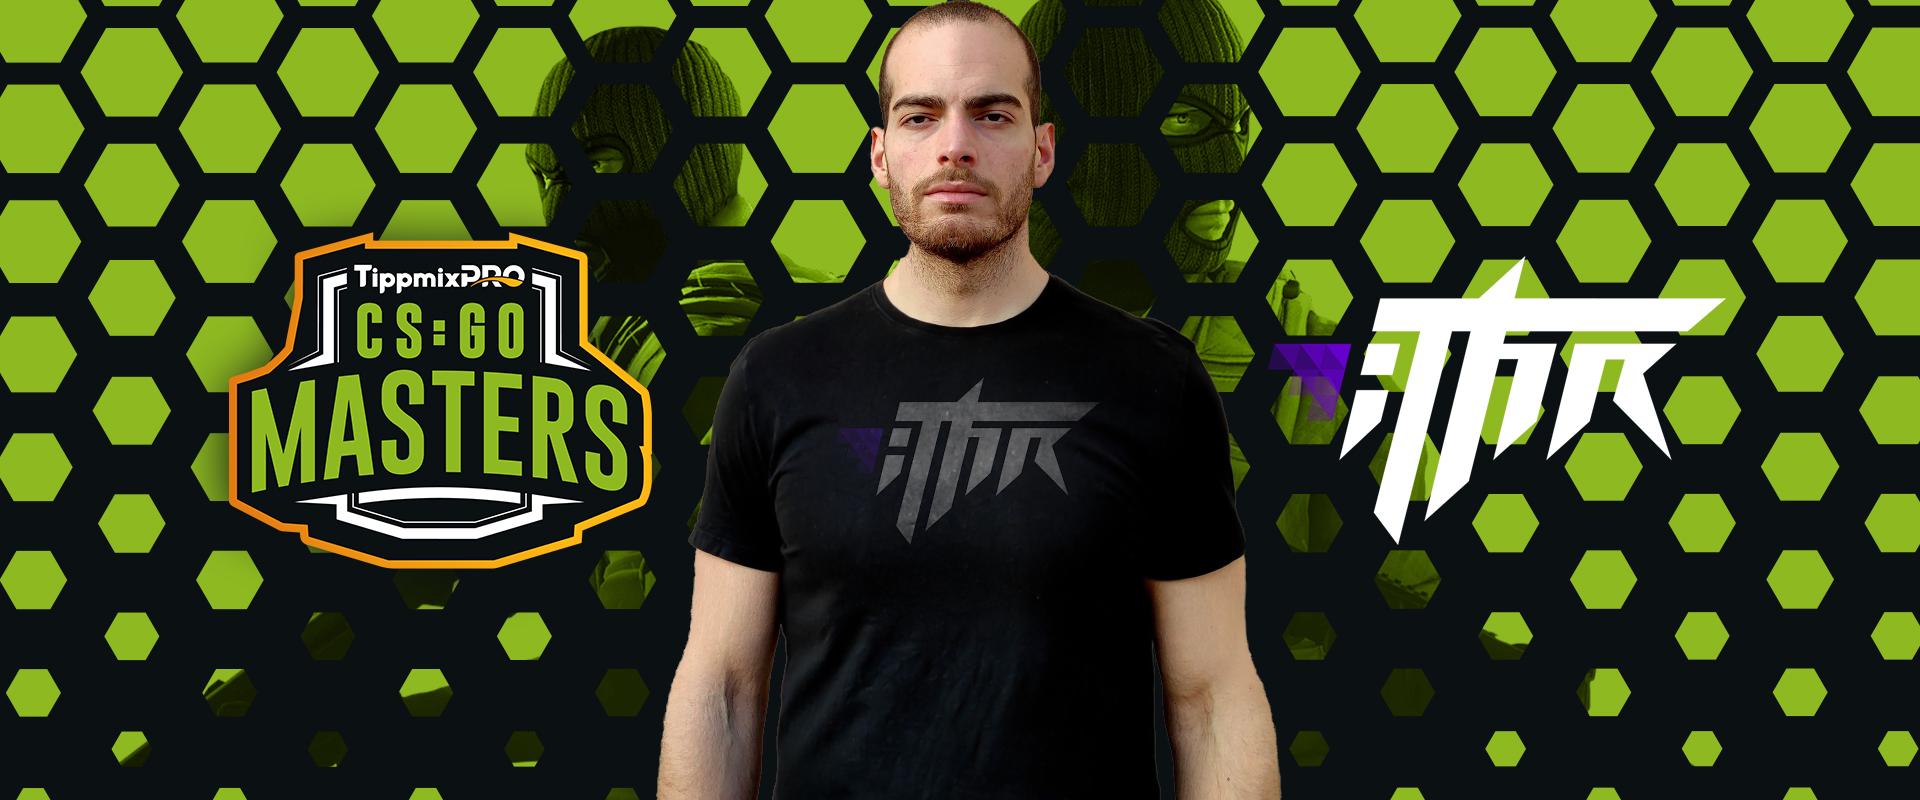 TippmixPro CS:GO Masters: Az iTHR csapatához fűződik az alapszakasz felének legszebb pillanata